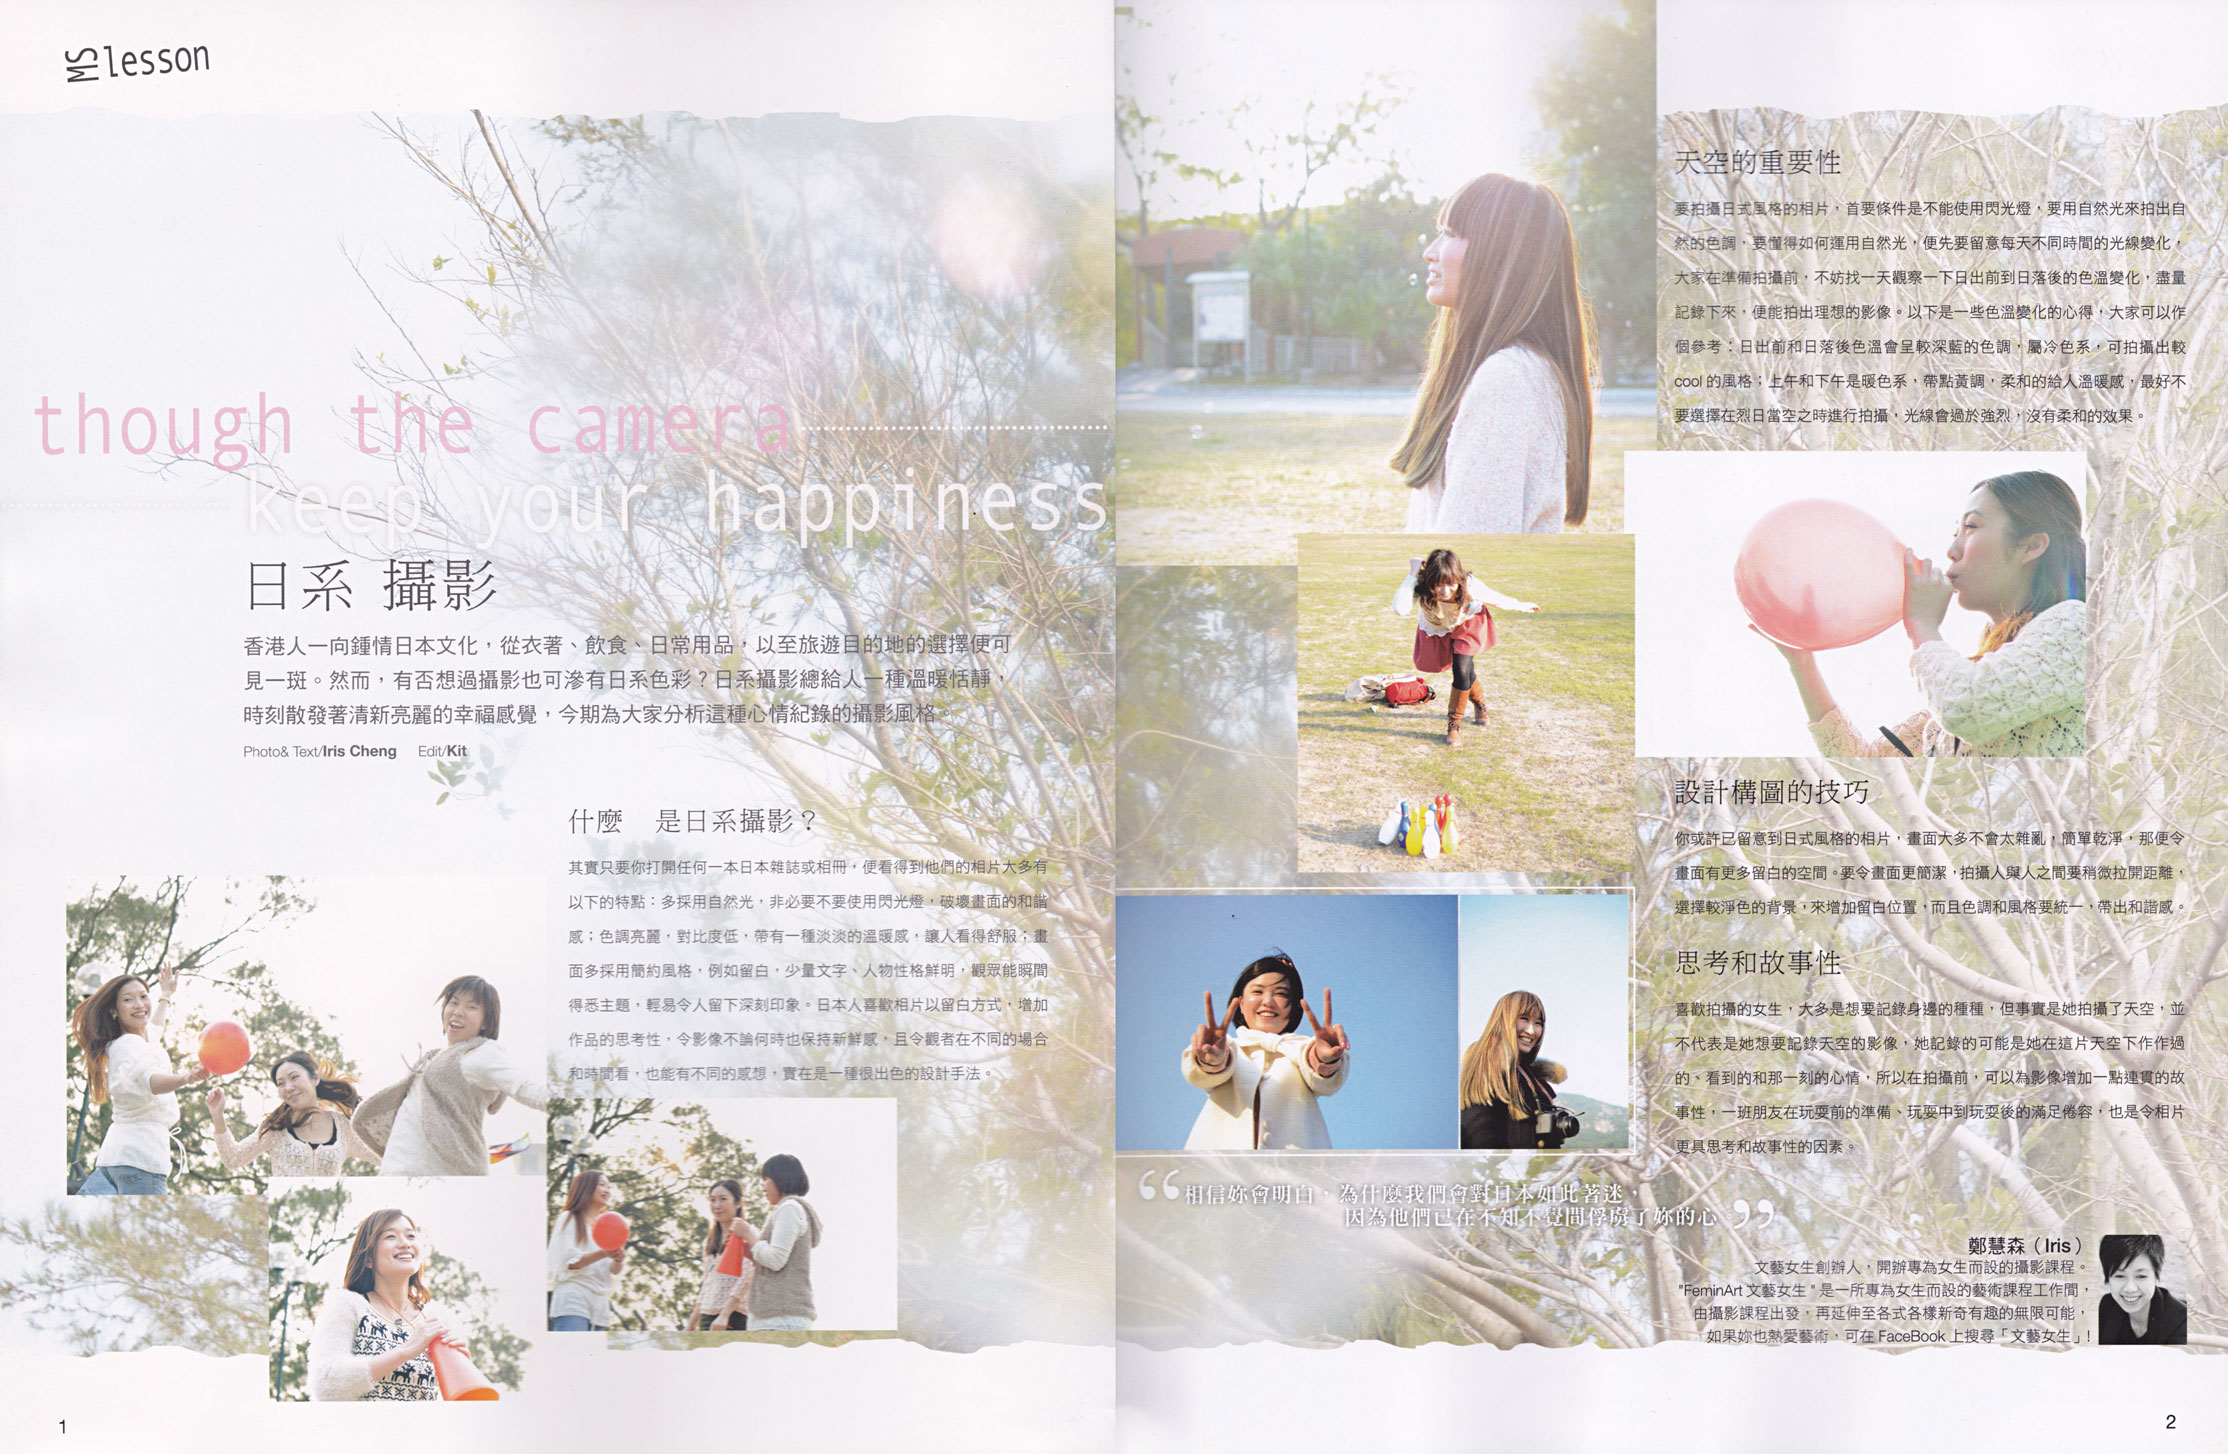 2012年3月 -《Miss Photo攝影雜誌》專訪 iris詳述日系攝影